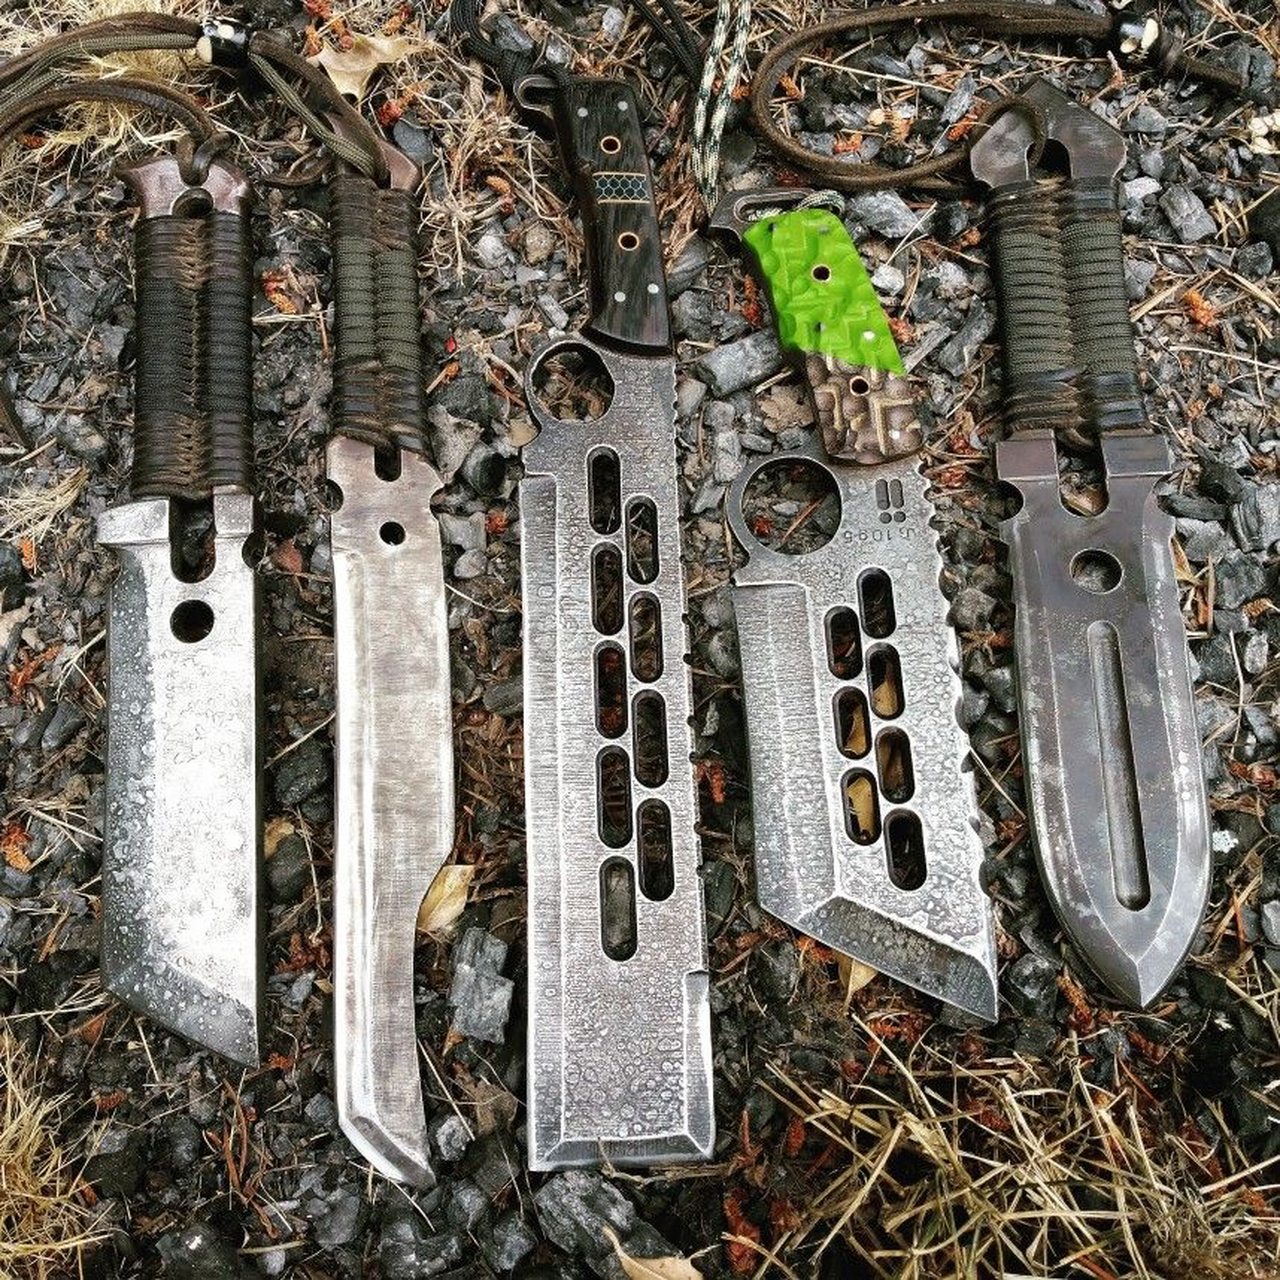 这是几把设计比较特别的刀,如果是野外生存的话,你选择哪一把?